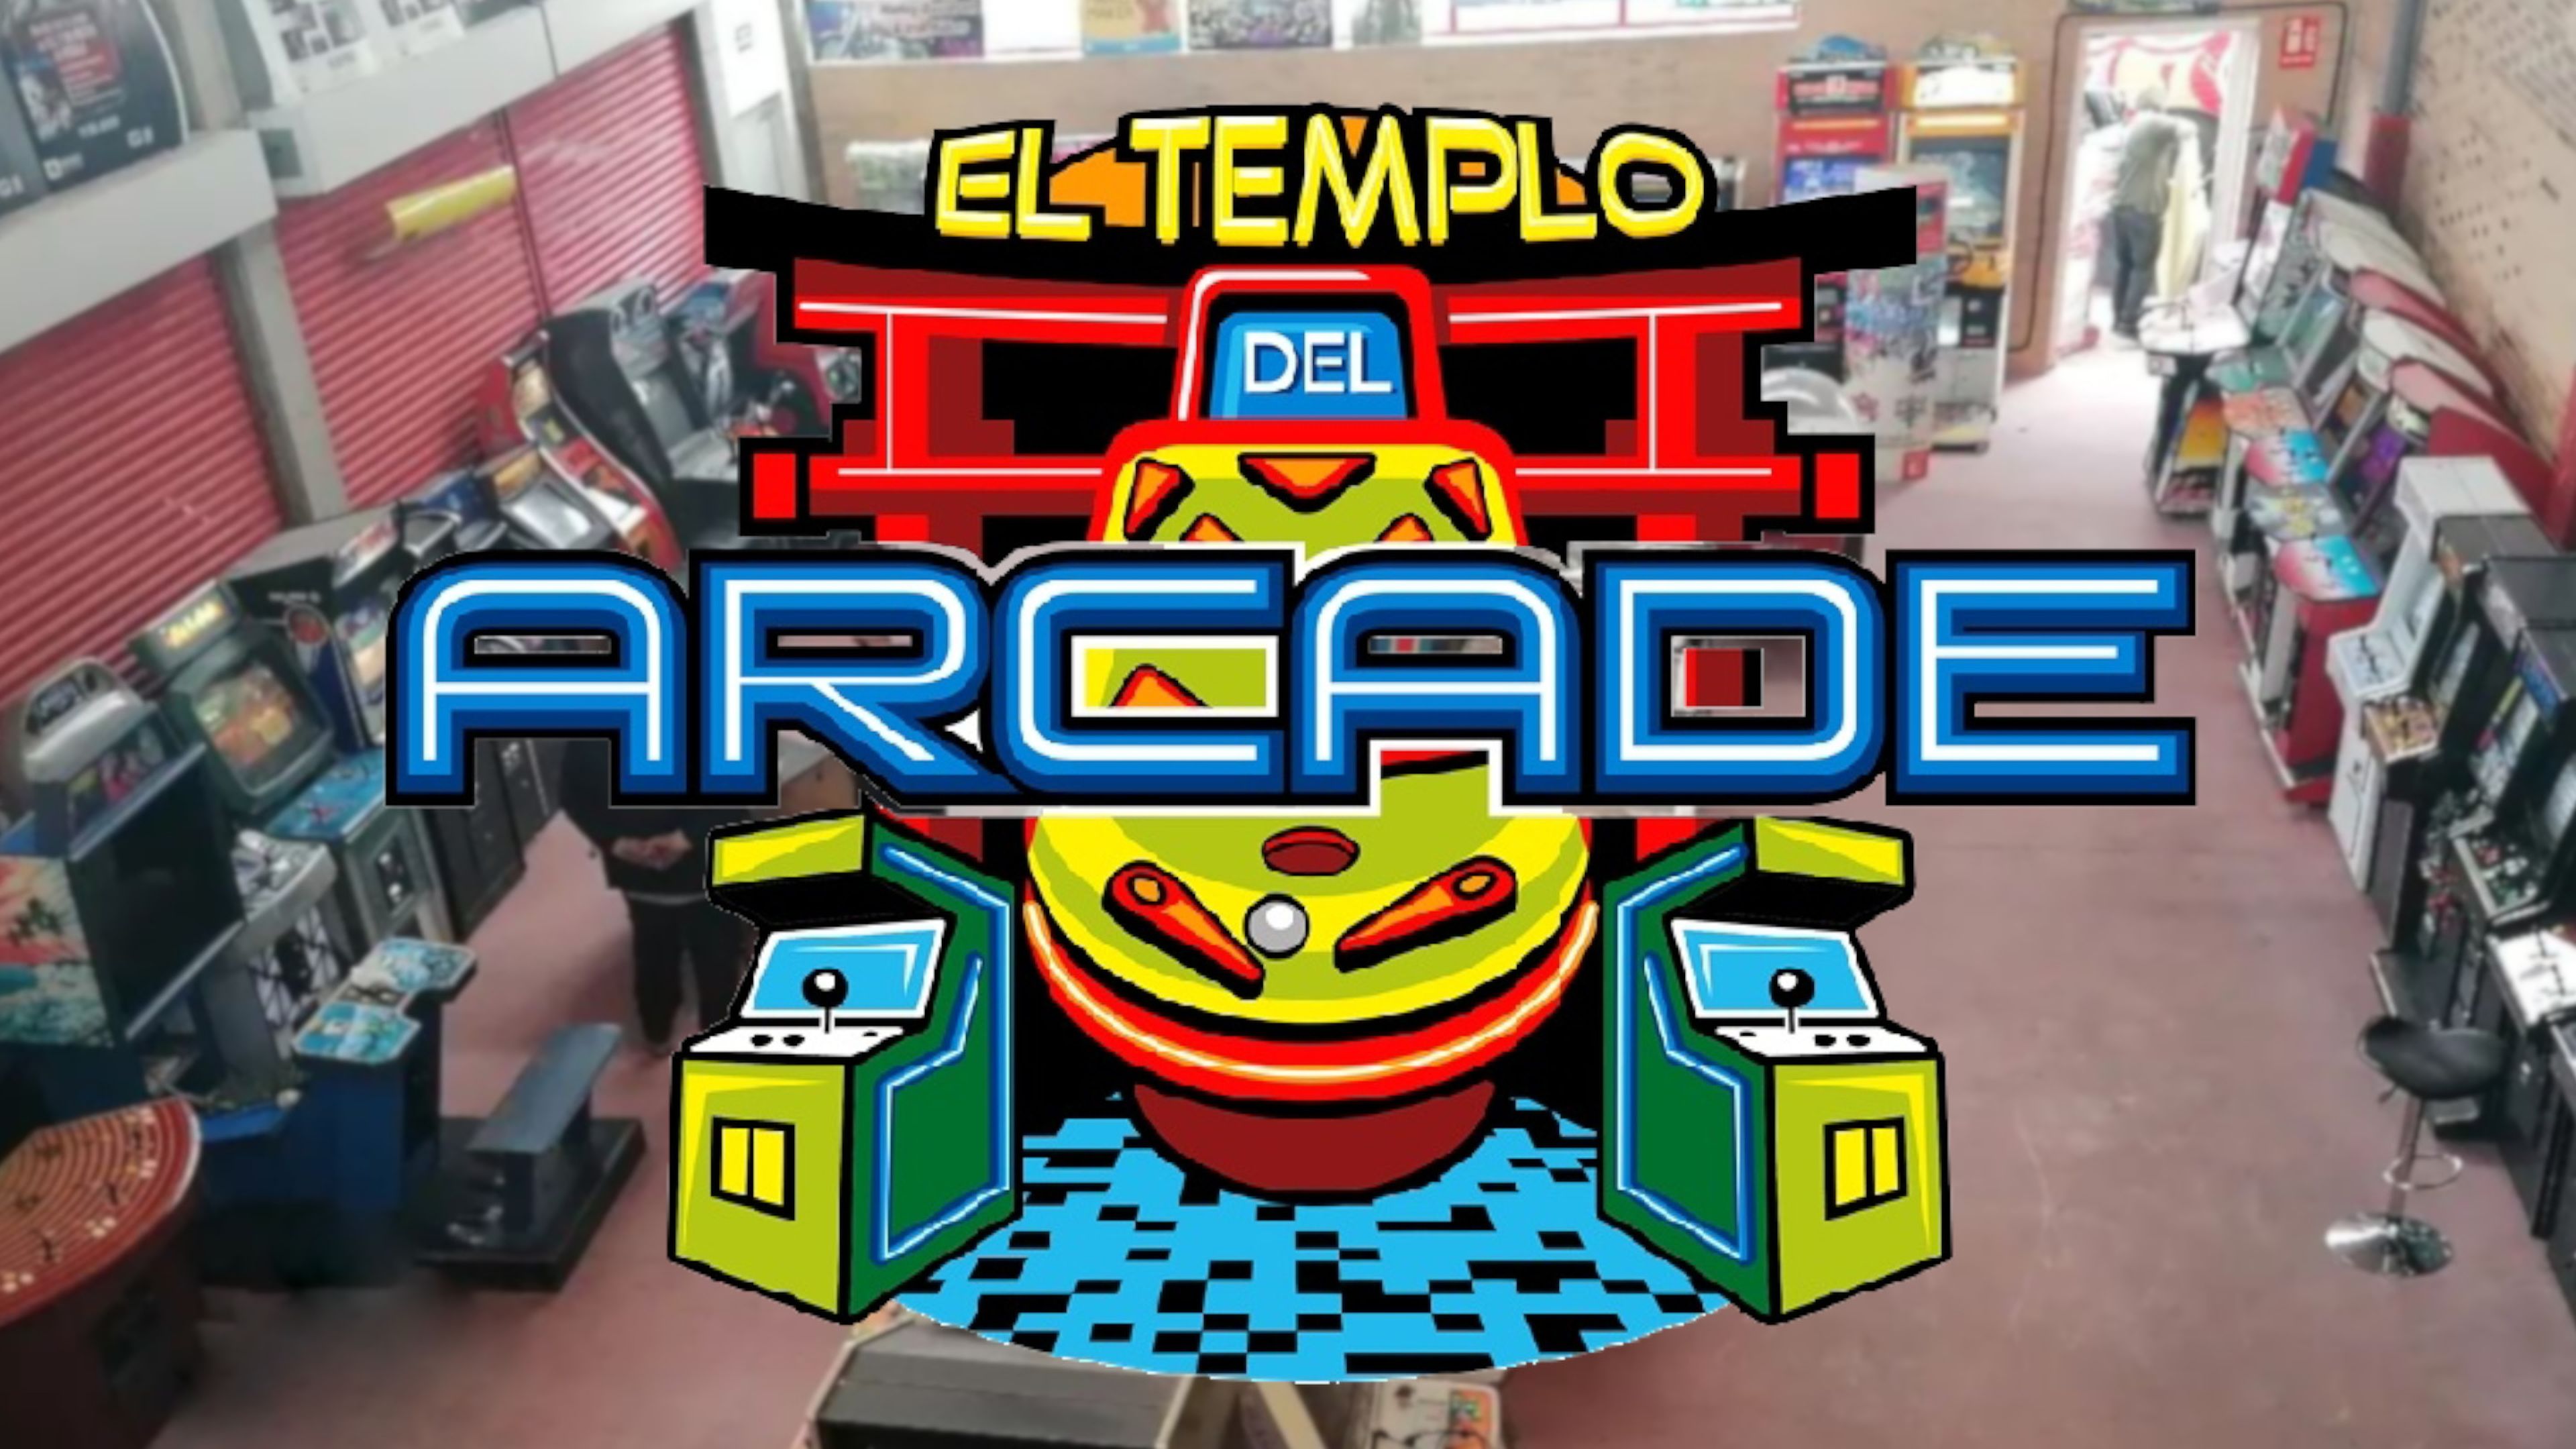 El Templo del Arcade